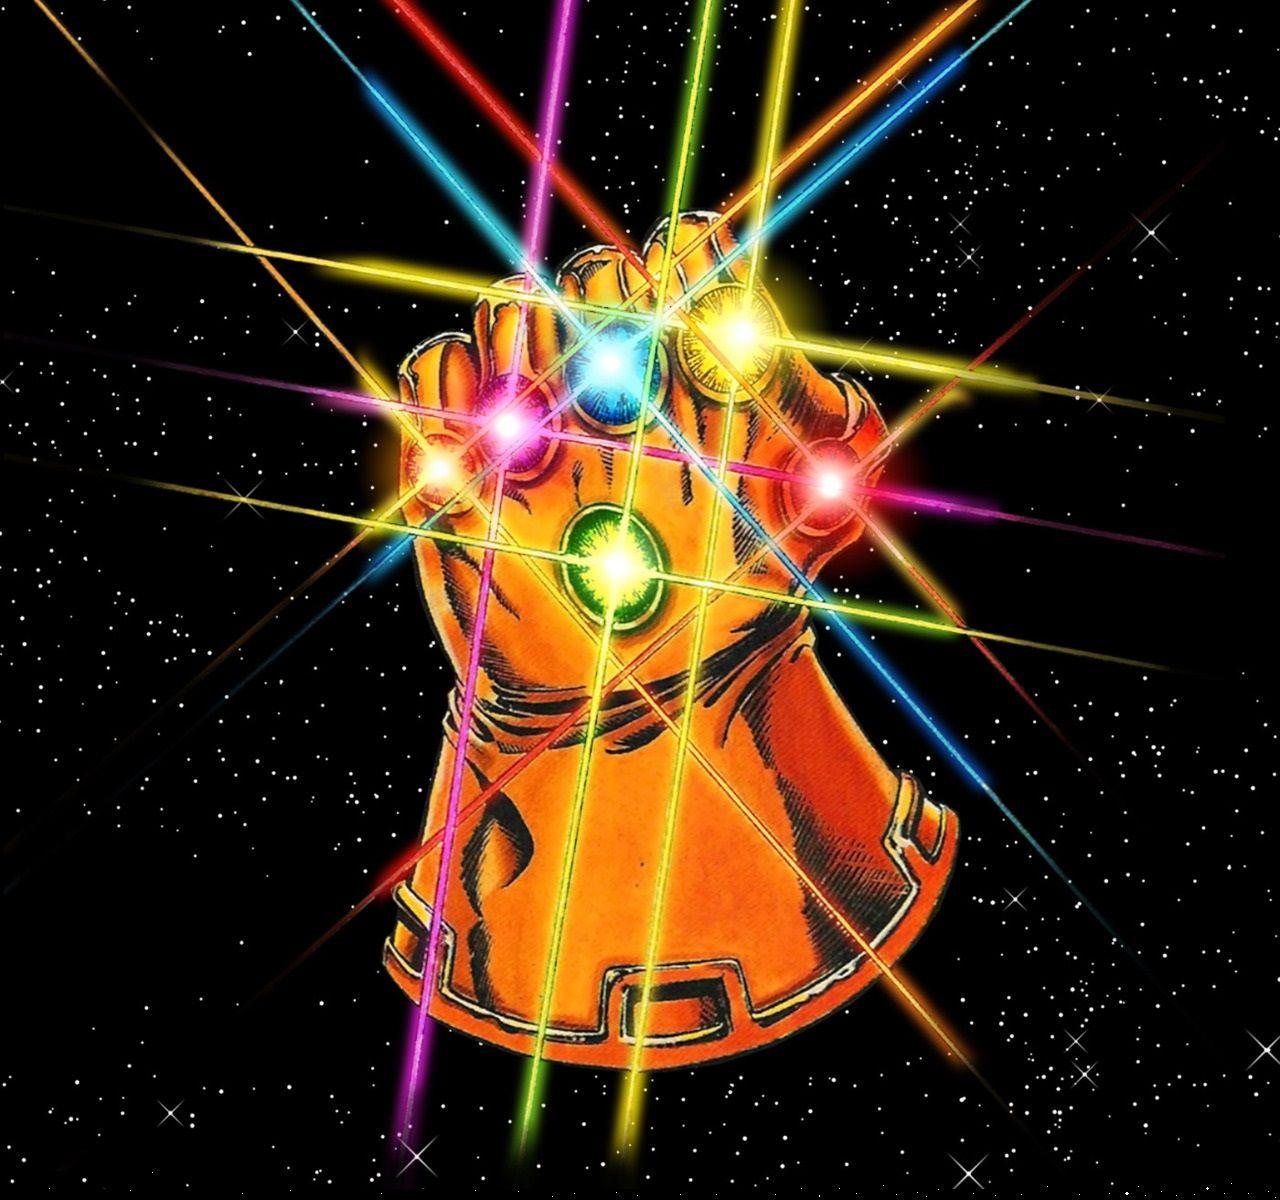 Thanos Infinity Gauntlet Holding Iron Man Mask IPhone Wallpaper  IPhone  Wallpapers  iPhone Wallpapers